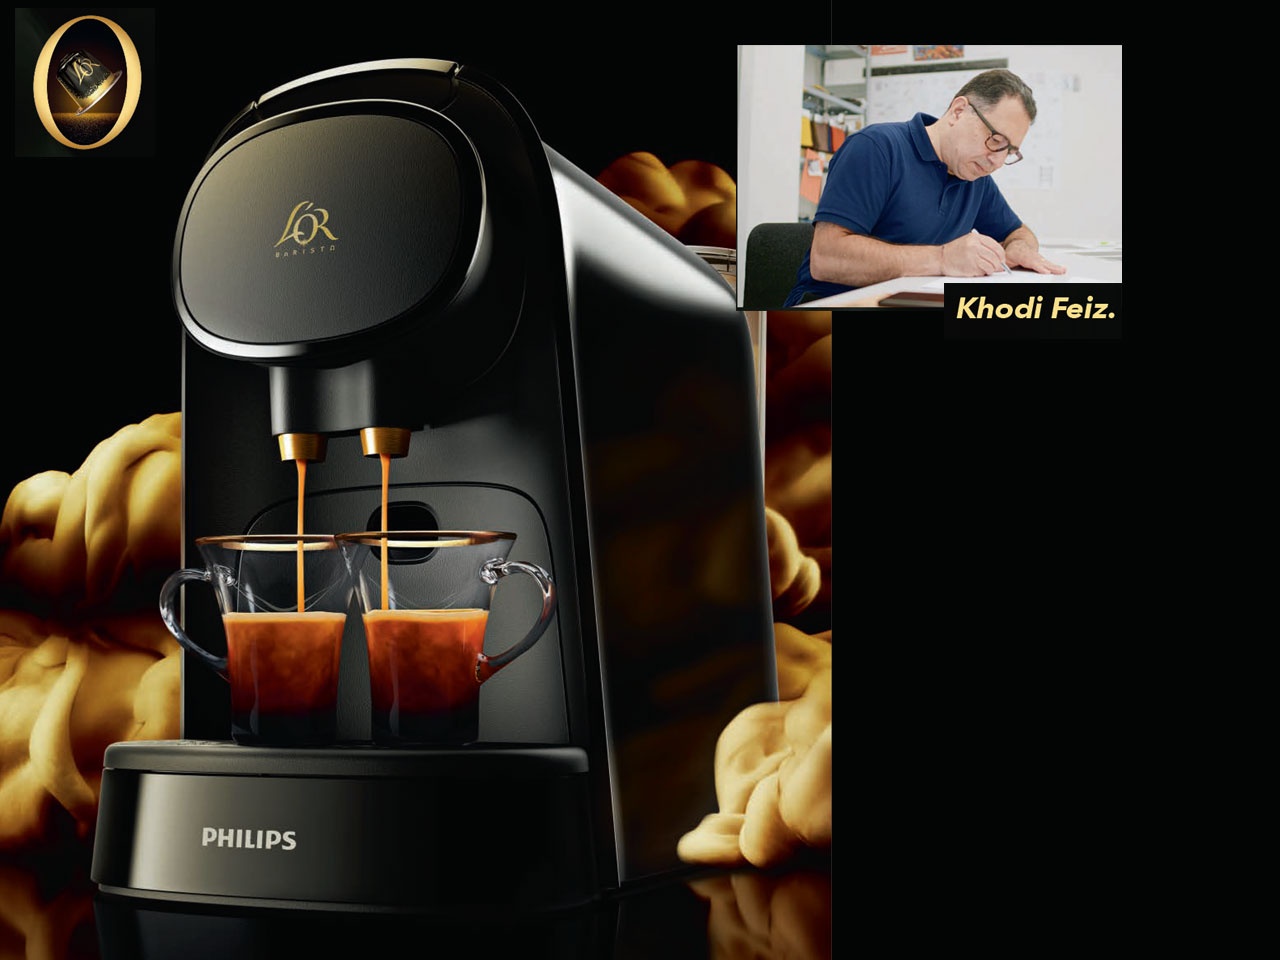 L’OR lance le système l’Or Barista pour un double espresso. Une machine signée Philips !